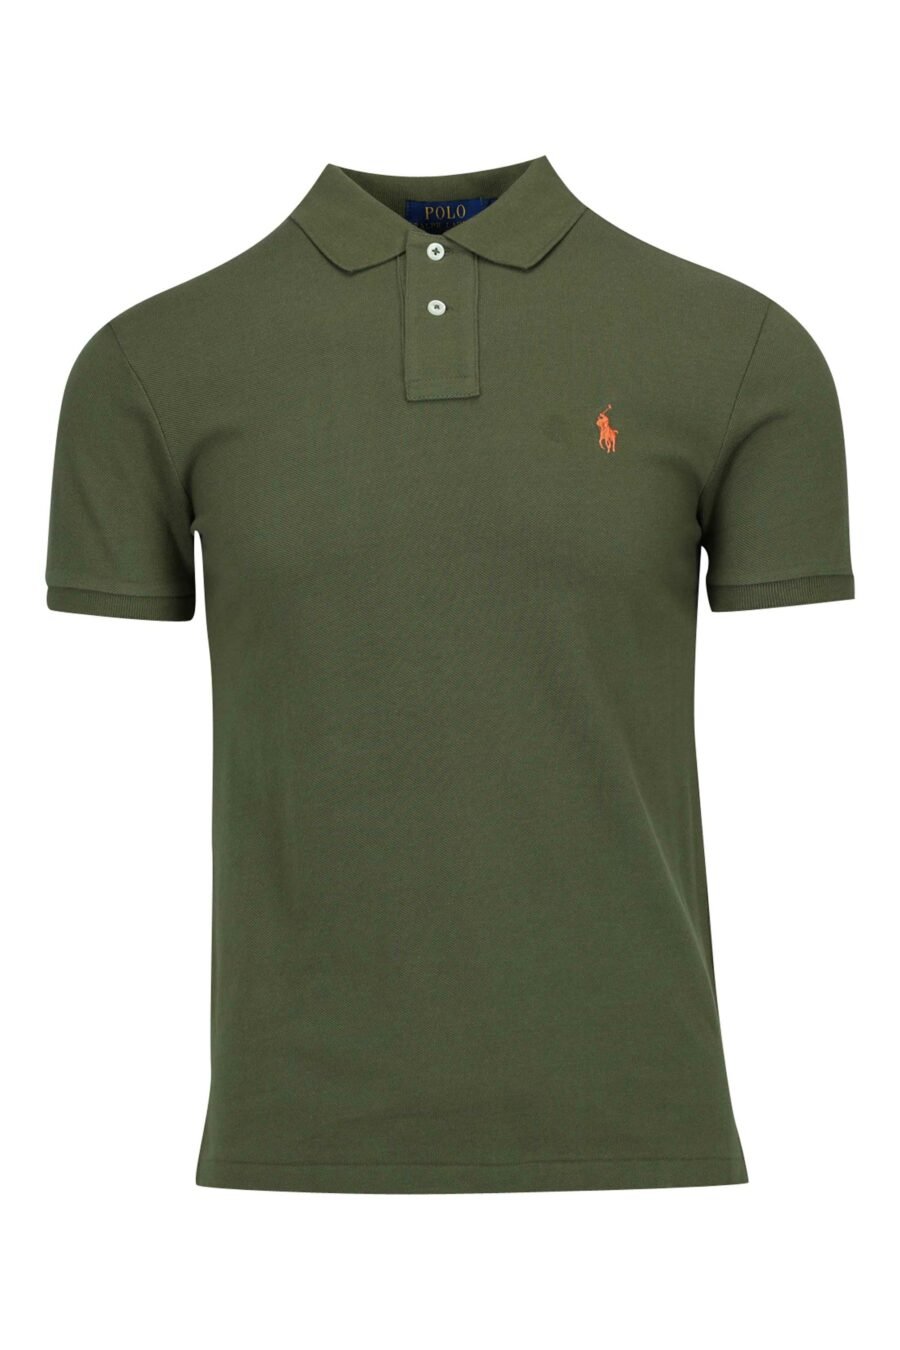 Dark green polo shirt with mini-logo "polo" - 3616411864093